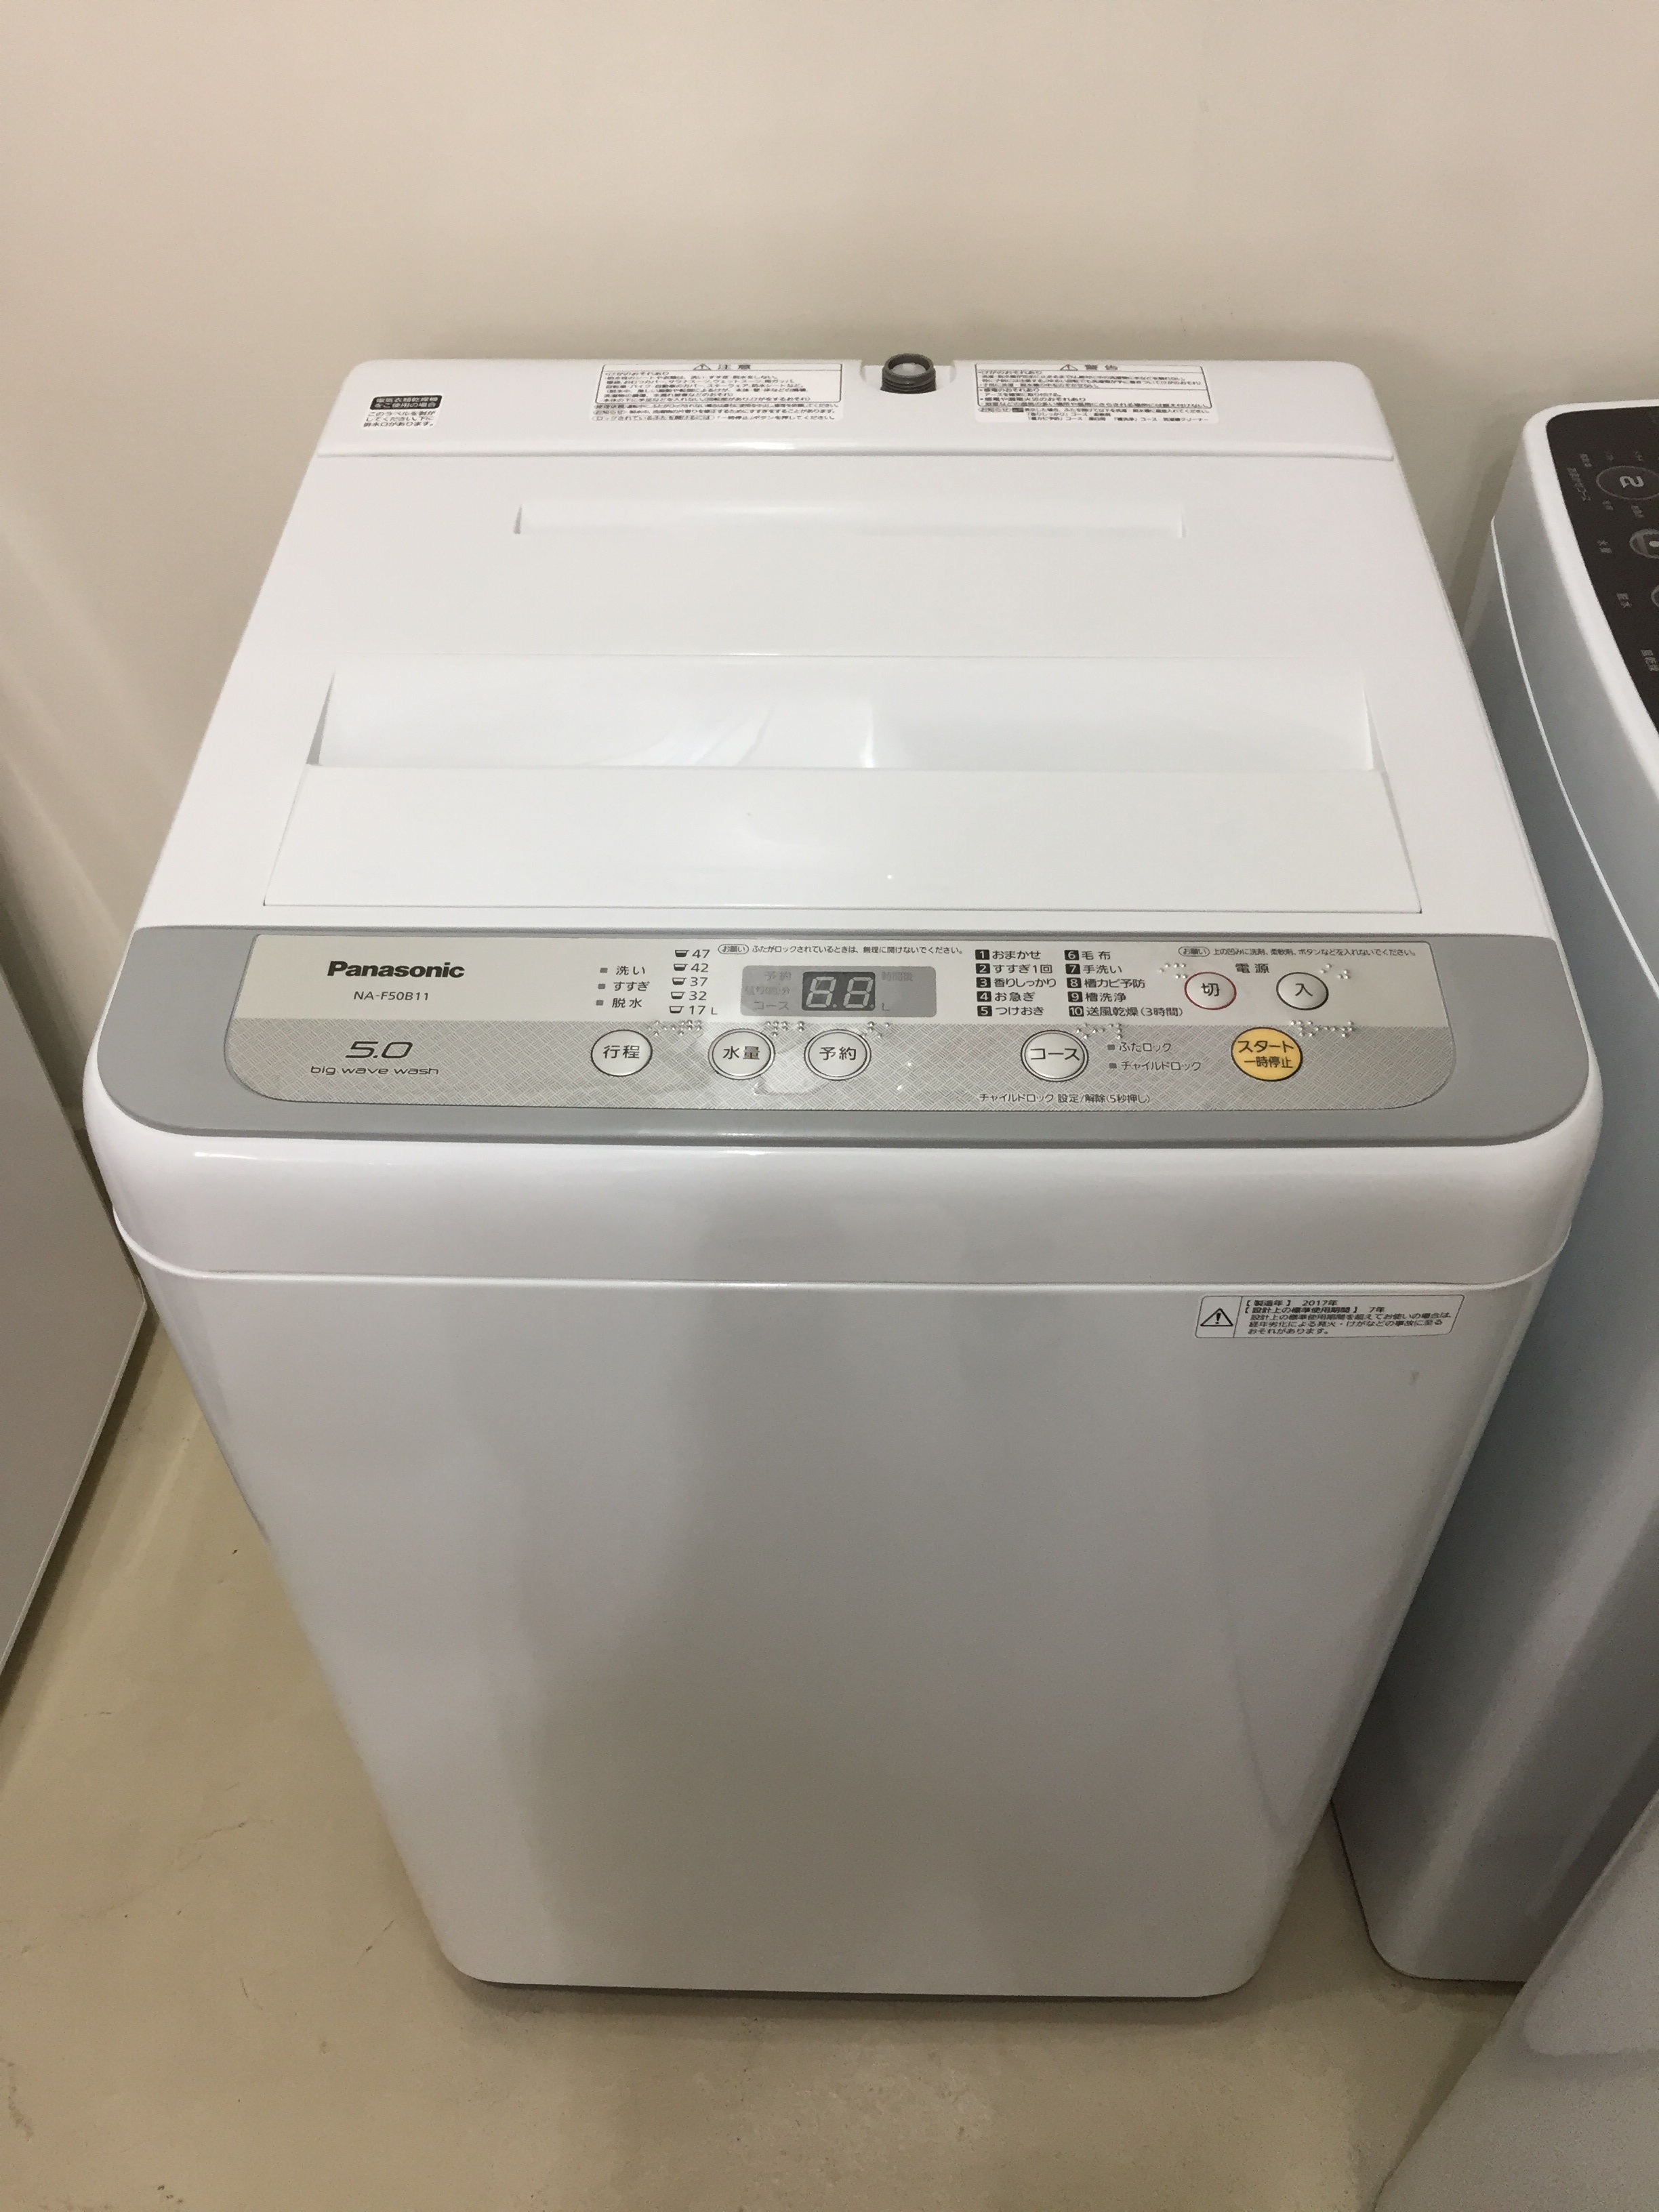 代引不可】 全自動洗濯機 5K パナソニック Panasonic na-f50b11